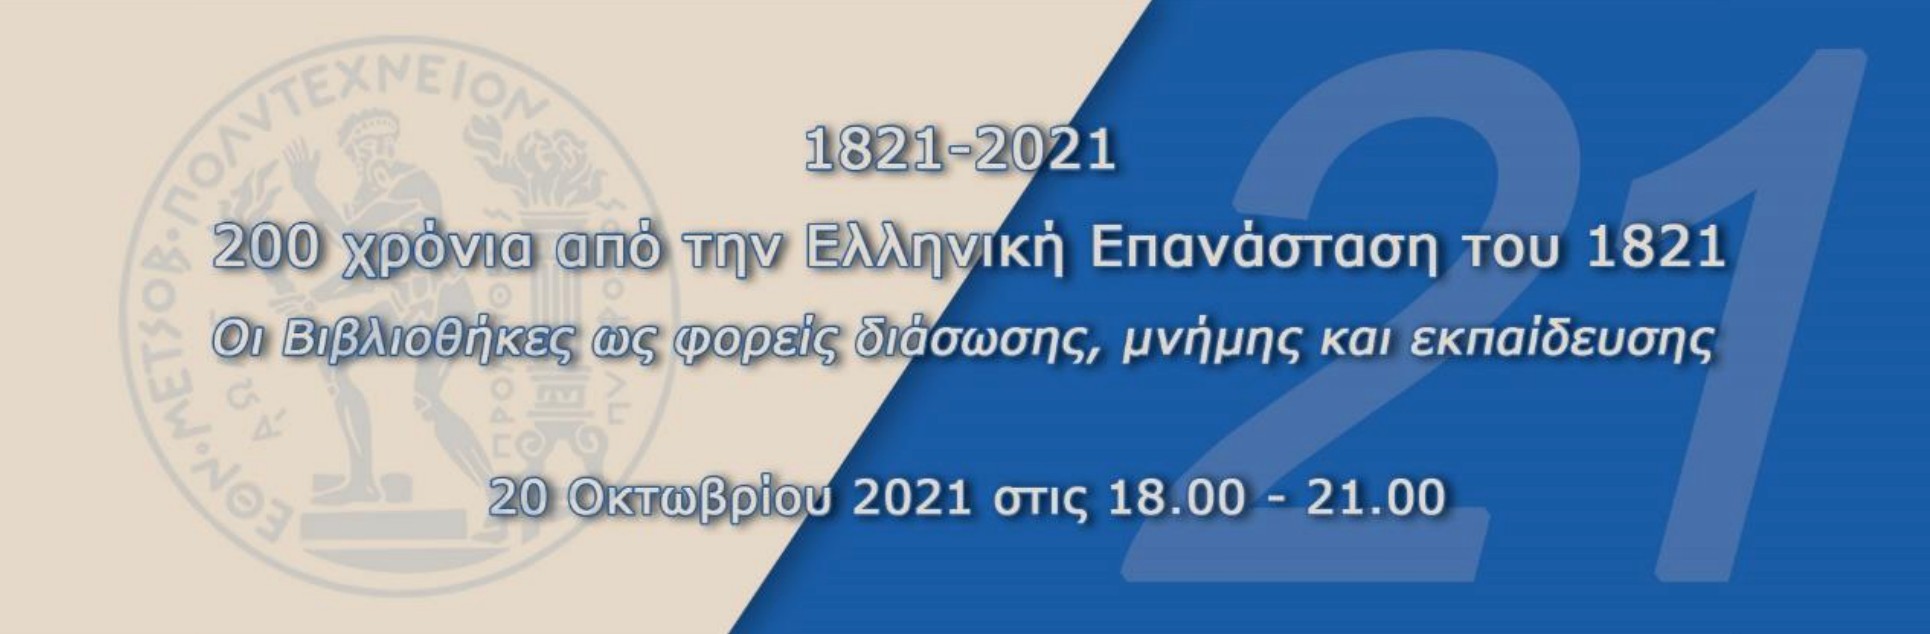  Βιβλιοθήκη ΕΜΠ: 200 χρόνια από την Ελληνική Επανάσταση του 1821 "Οι Βιβλιοθήκες ως φορείς διάσωσης, μνήμης και εκπαίδευσης"